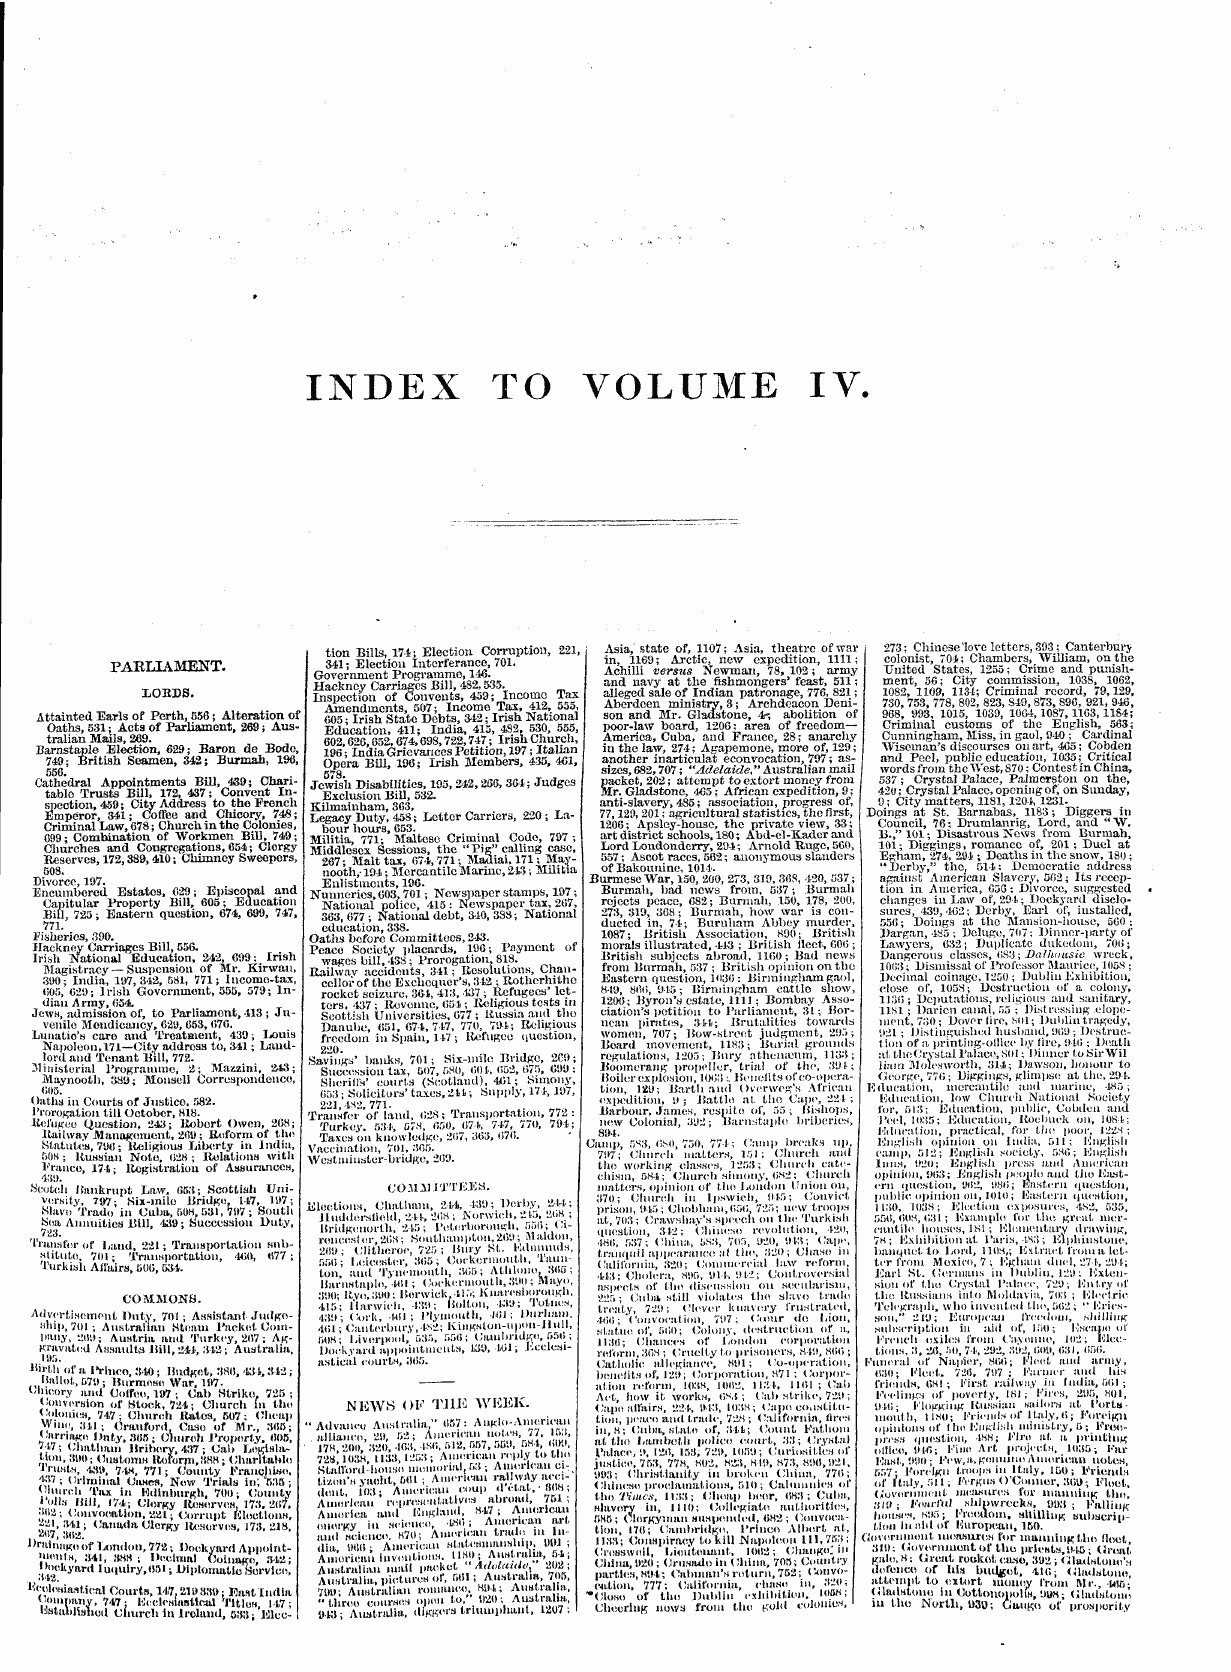 Leader (1850-1860): jS F Y, 1st edition, Front matter: 3